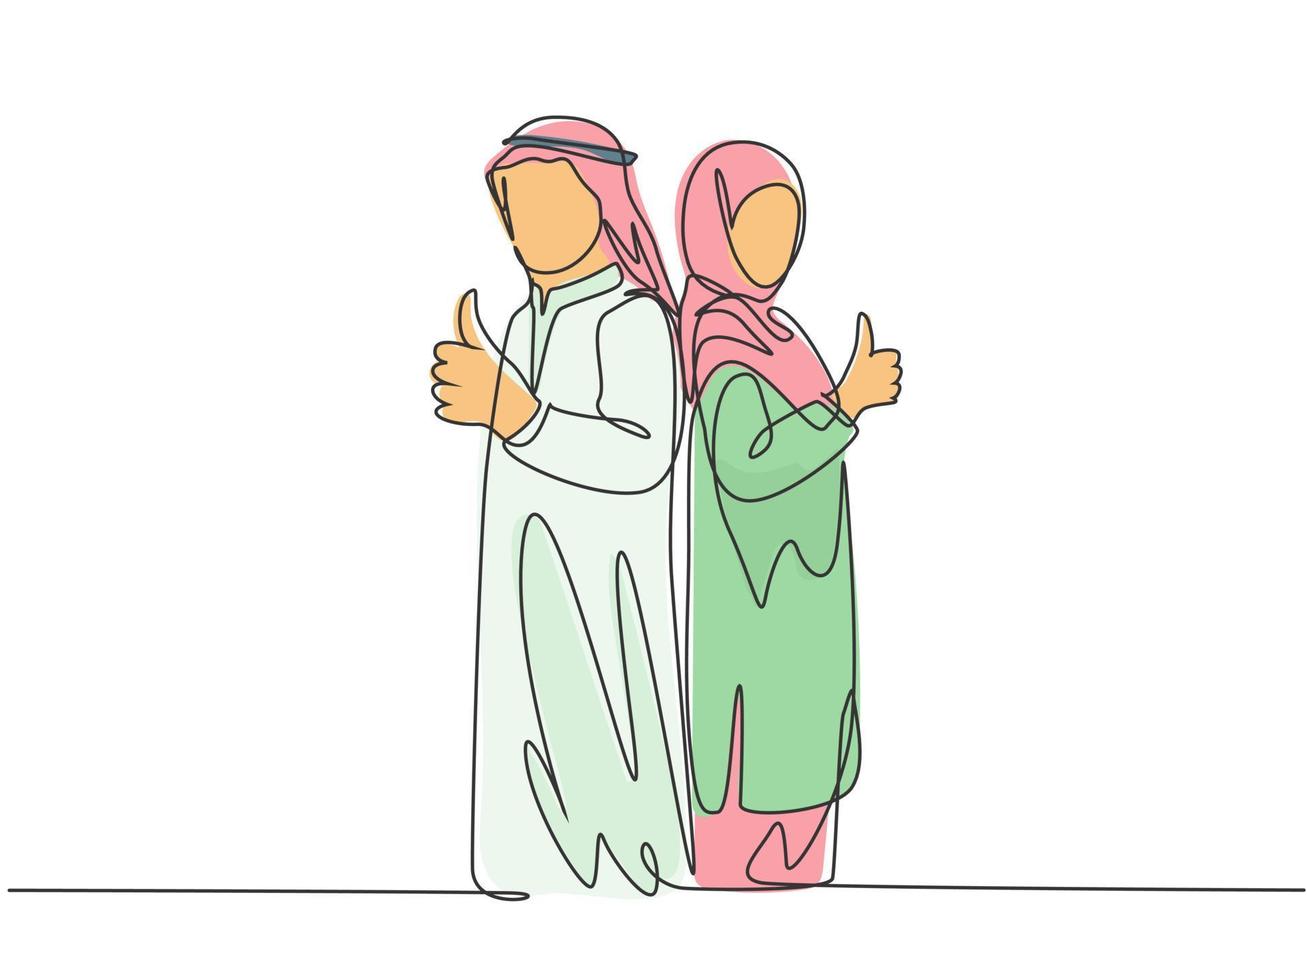 un unico disegno a tratteggio di giovani coppie maschili e femminili musulmane felici dà il pollice in su gesto. shmag di stoffa dell'arabia saudita, kandora, foulard, thobe, ghutra. illustrazione vettoriale di disegno di disegno di linea continua